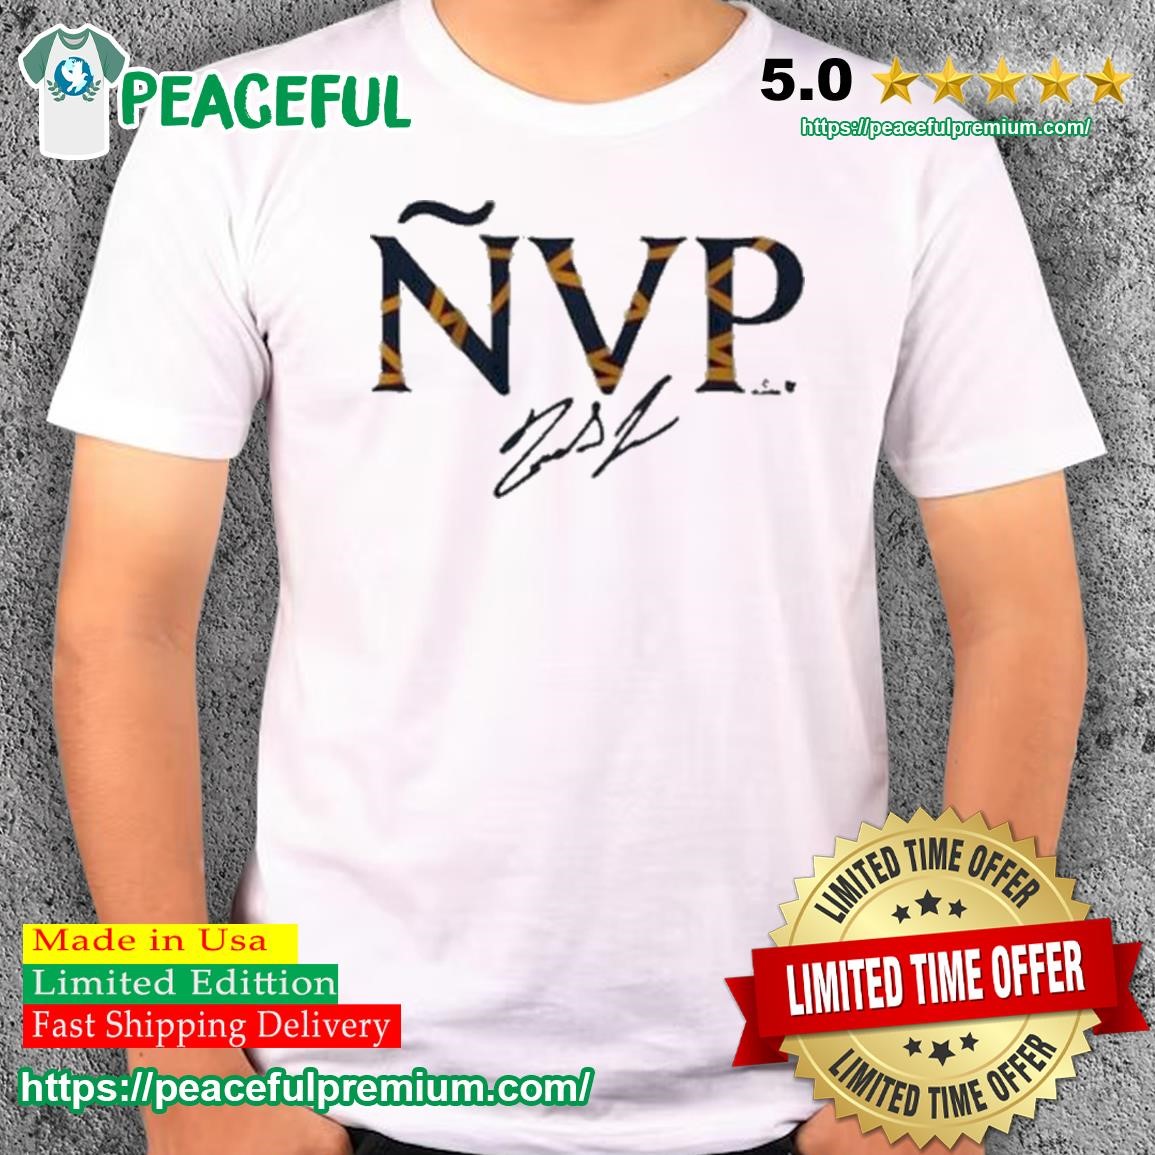 Ipeepz Ronald Acuna Jr NVP Signature Shirt